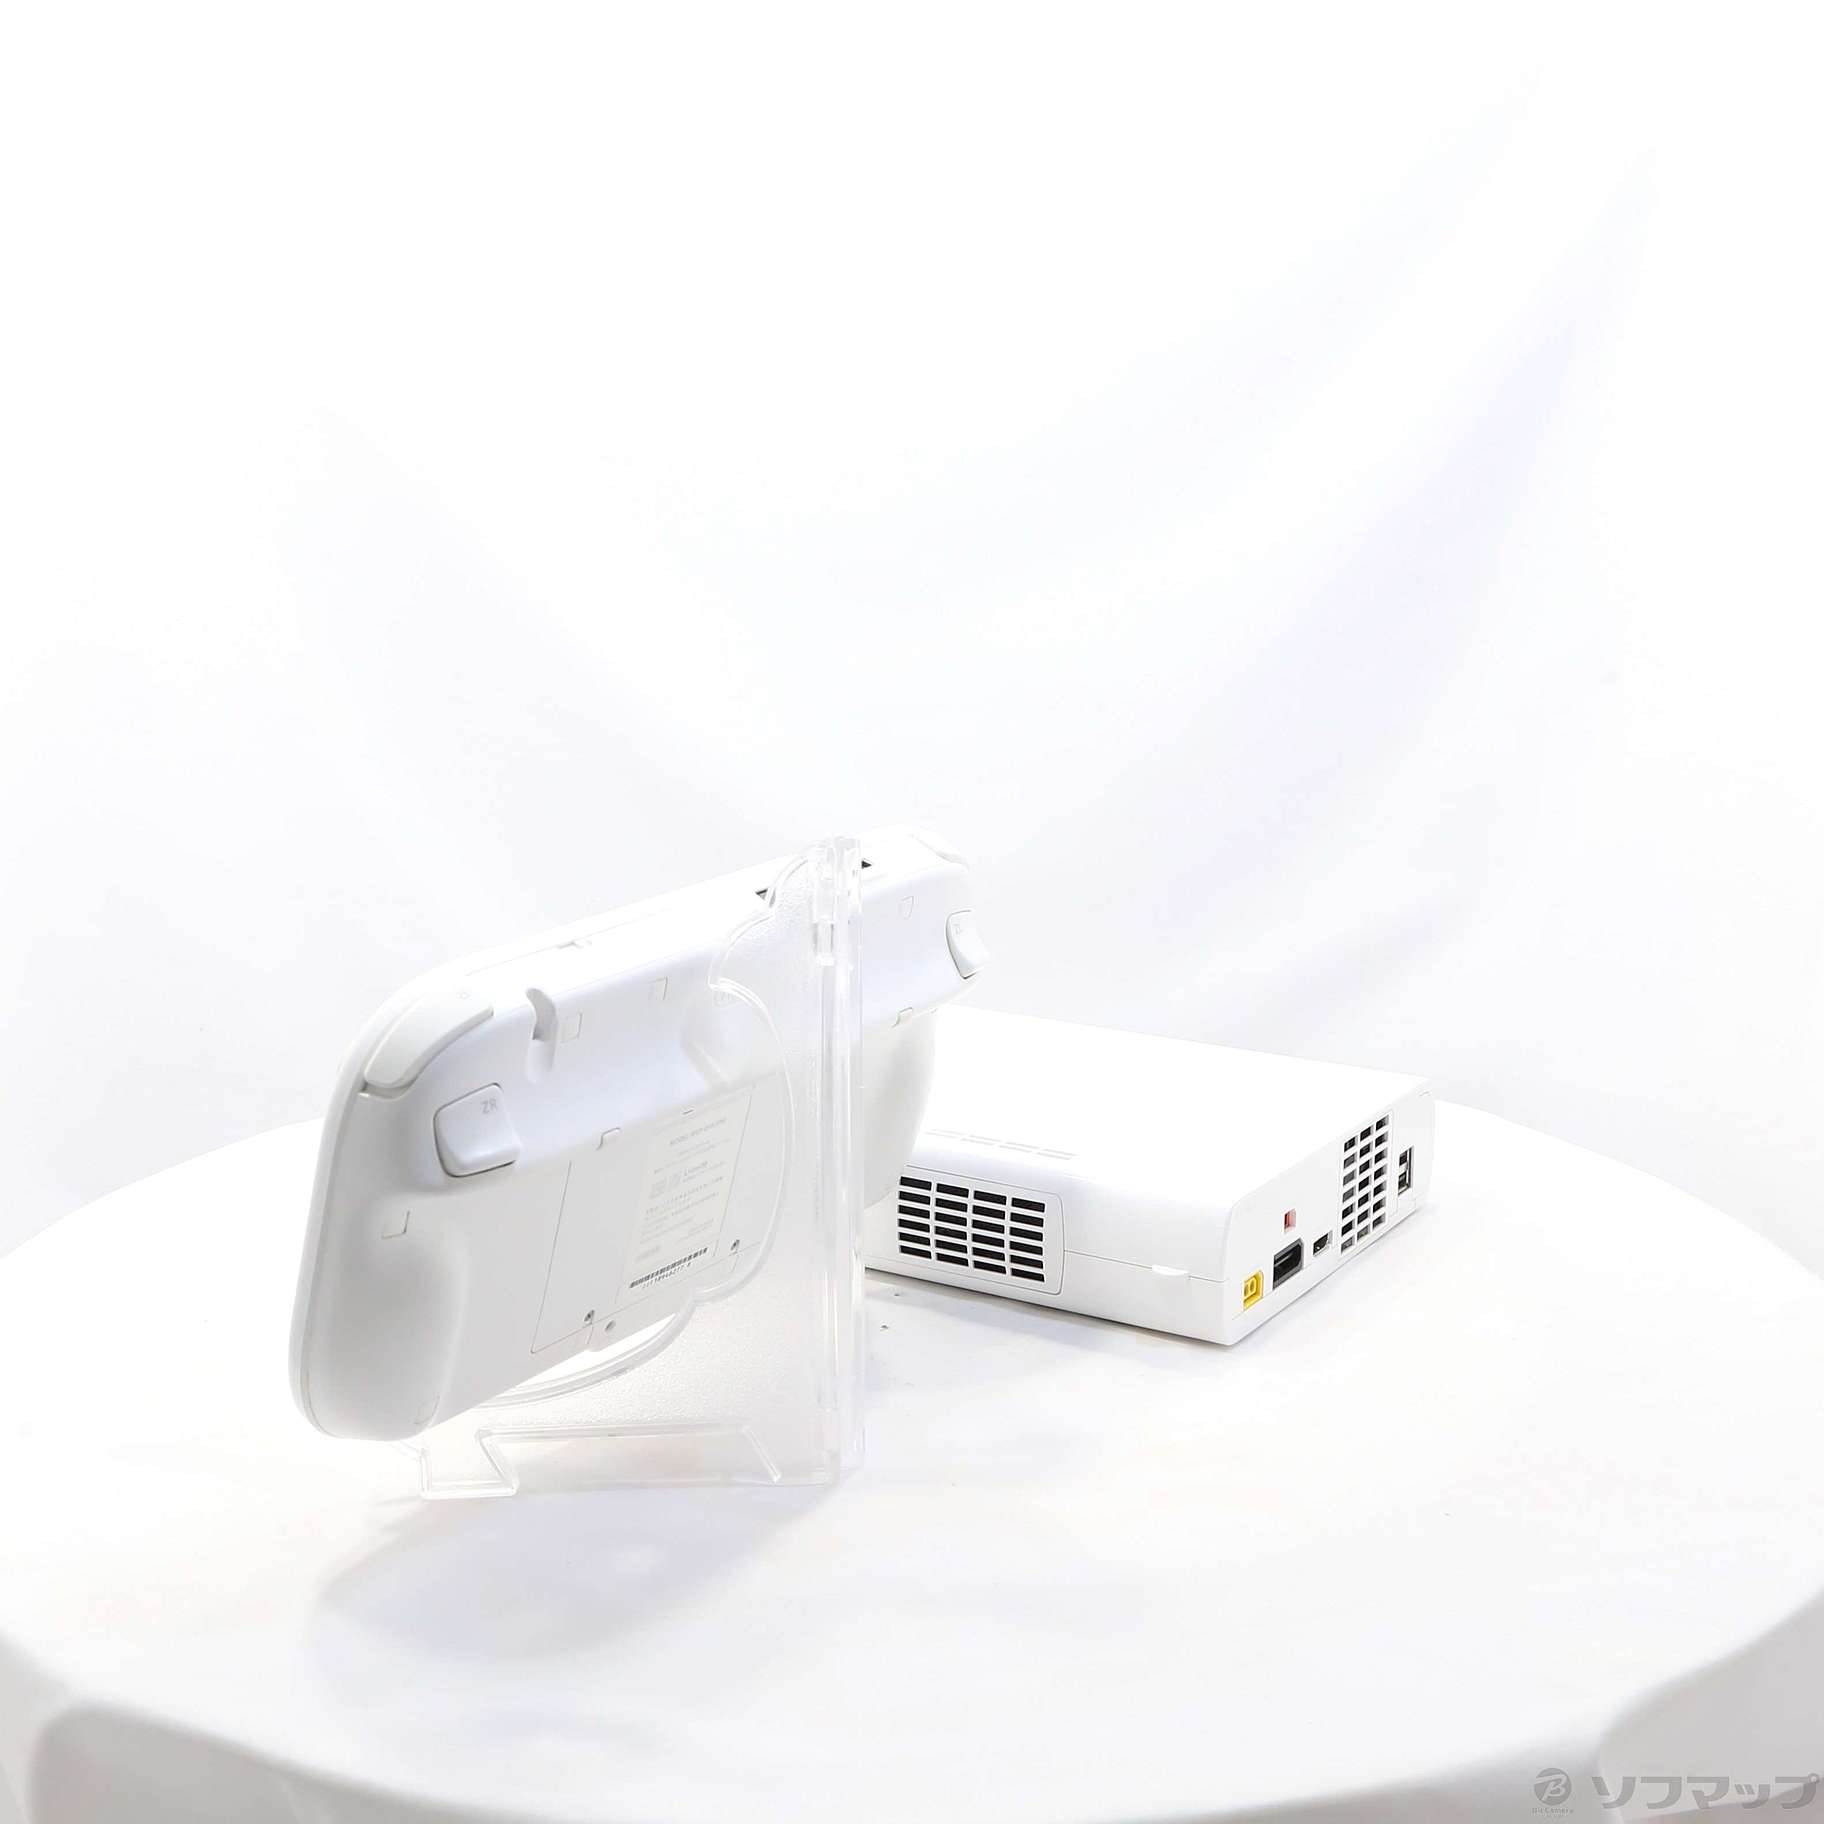 中古】セール対象品 Wii U マリオカート8セットシロ WUP-S-WAGH